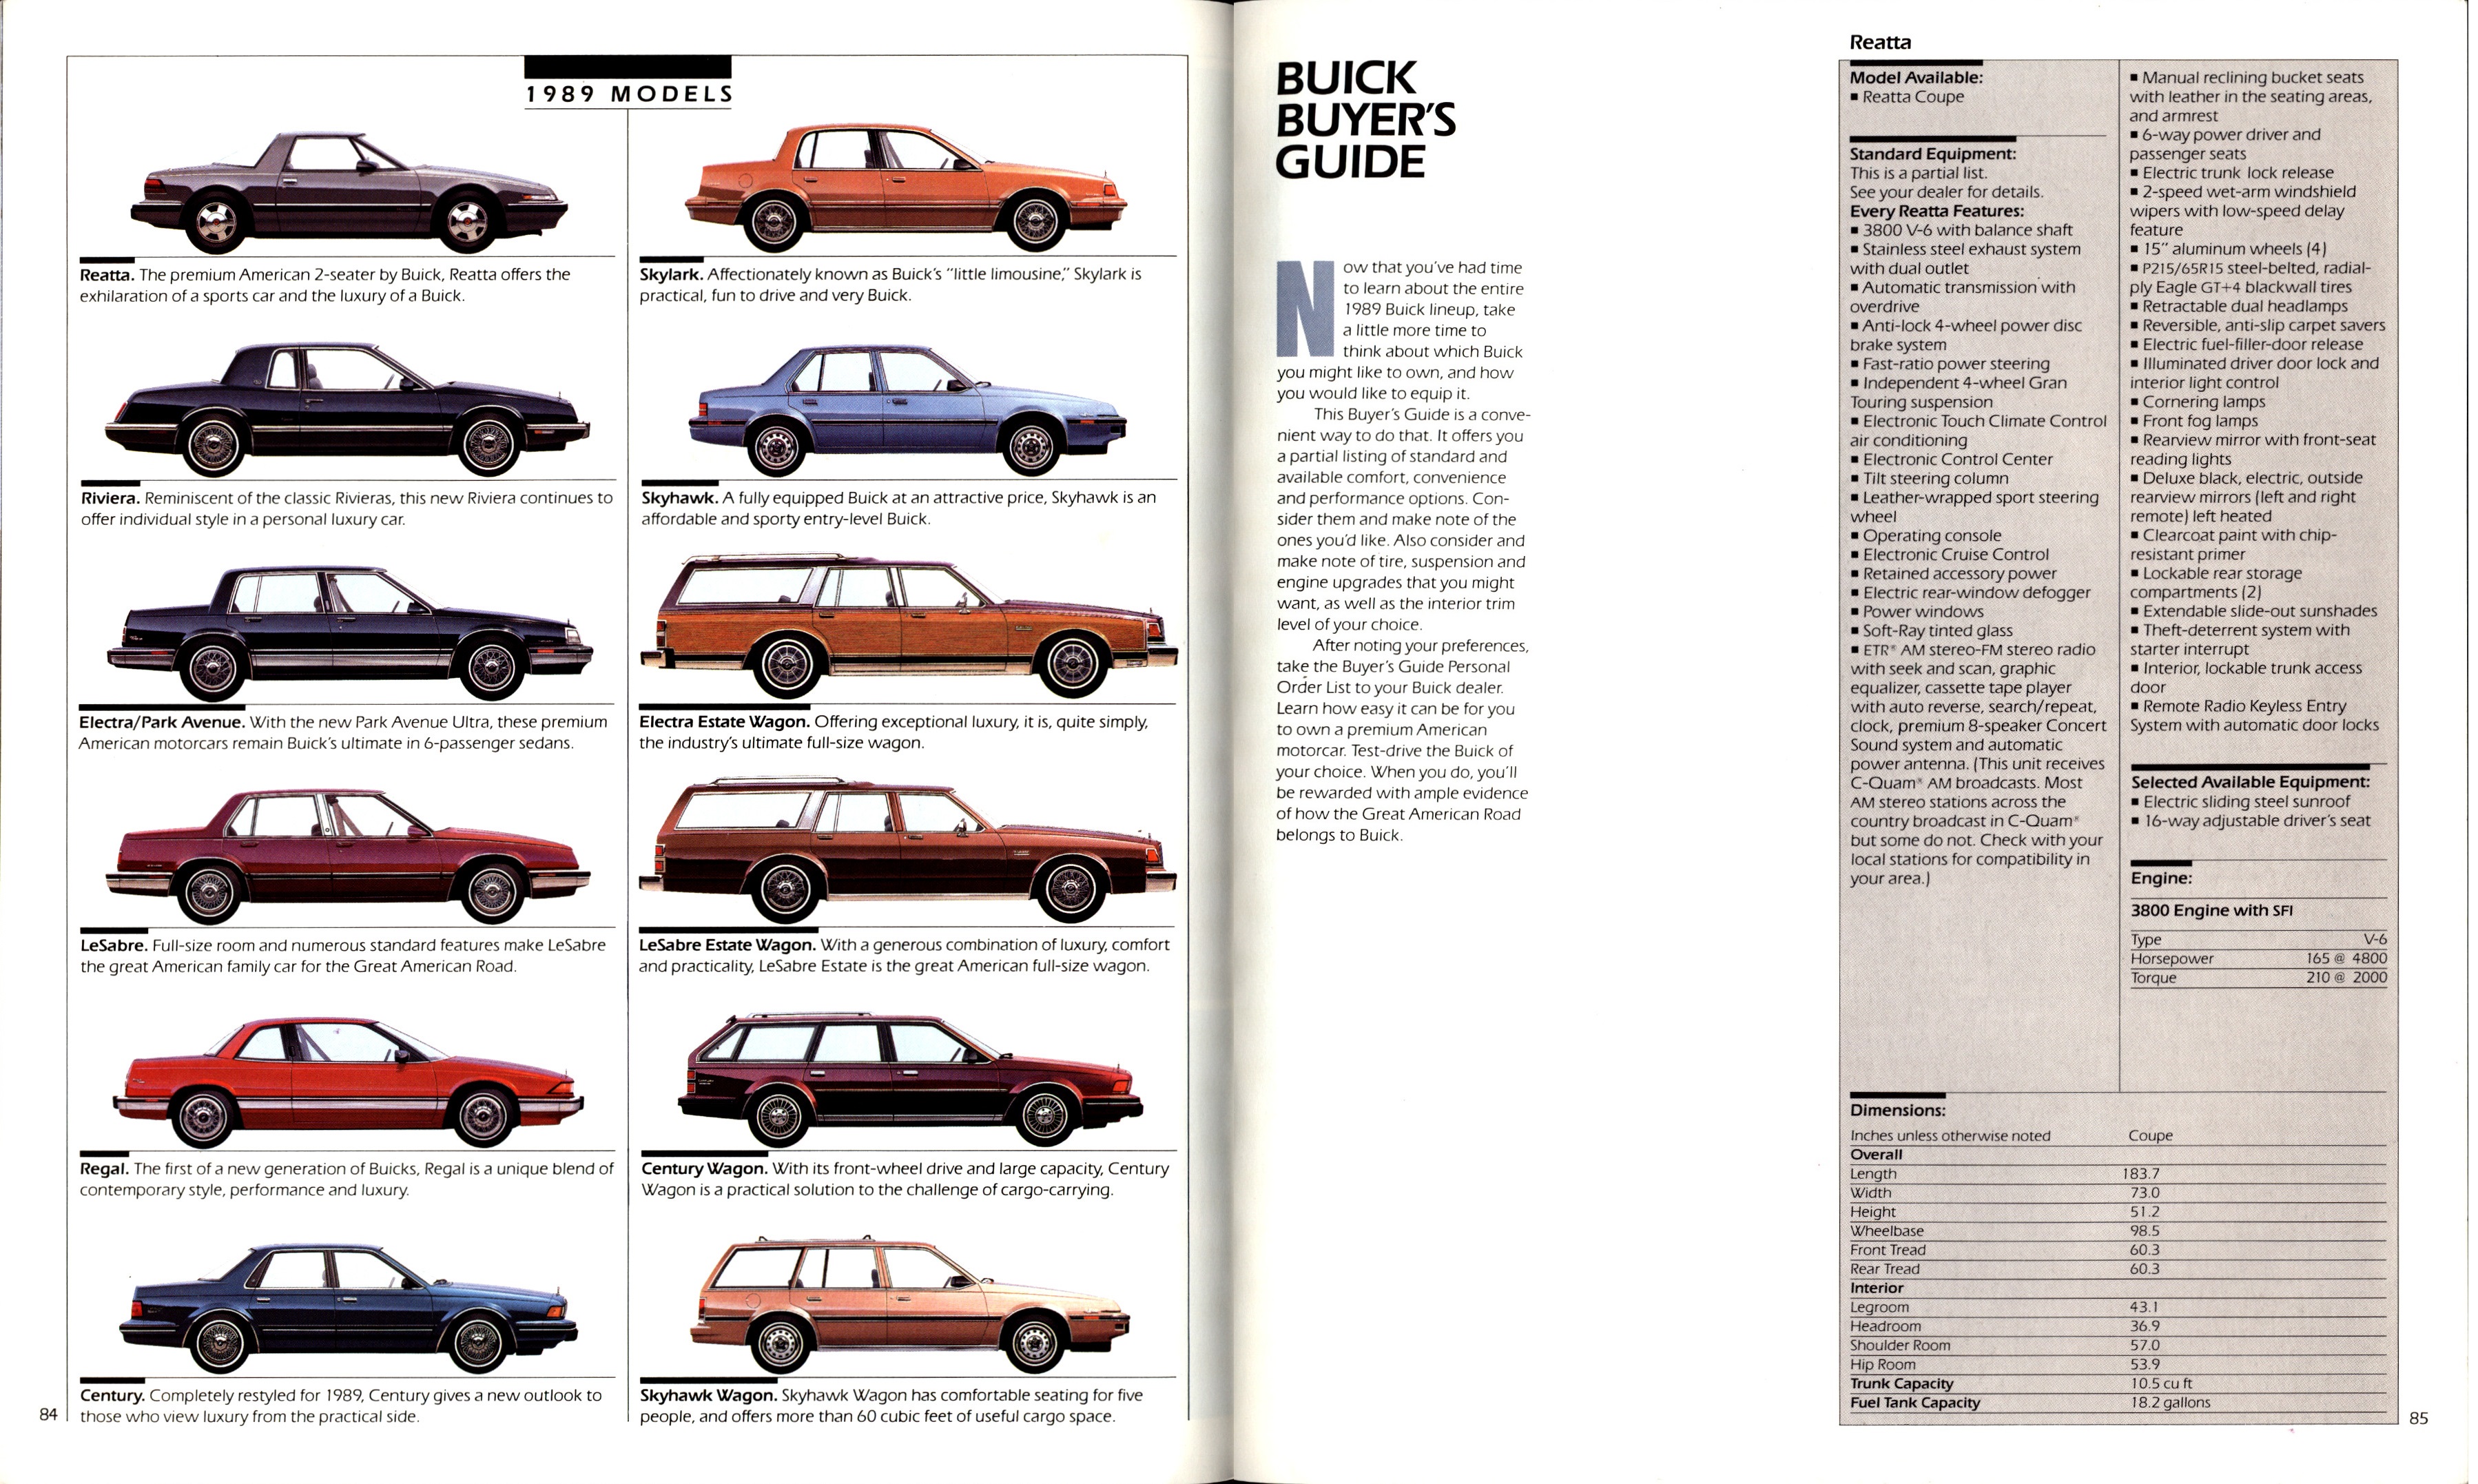 1989 Buick Full Line Prestige-84-85